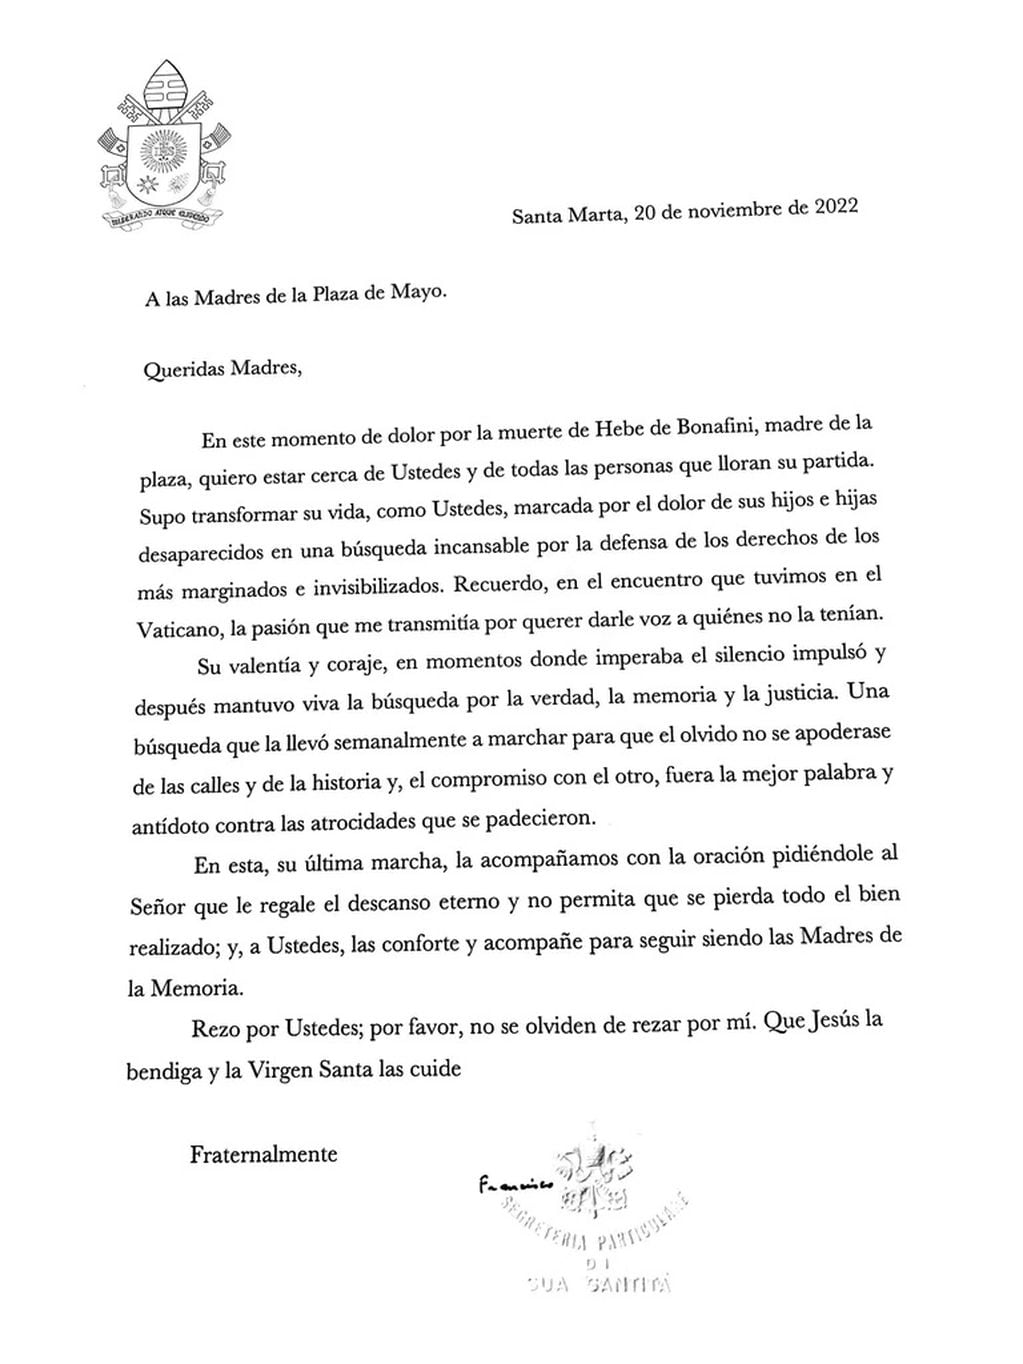 La carta del papa Francisco a las Madres de Plaza de Mayo por la muerte de Hebe de Bonafini